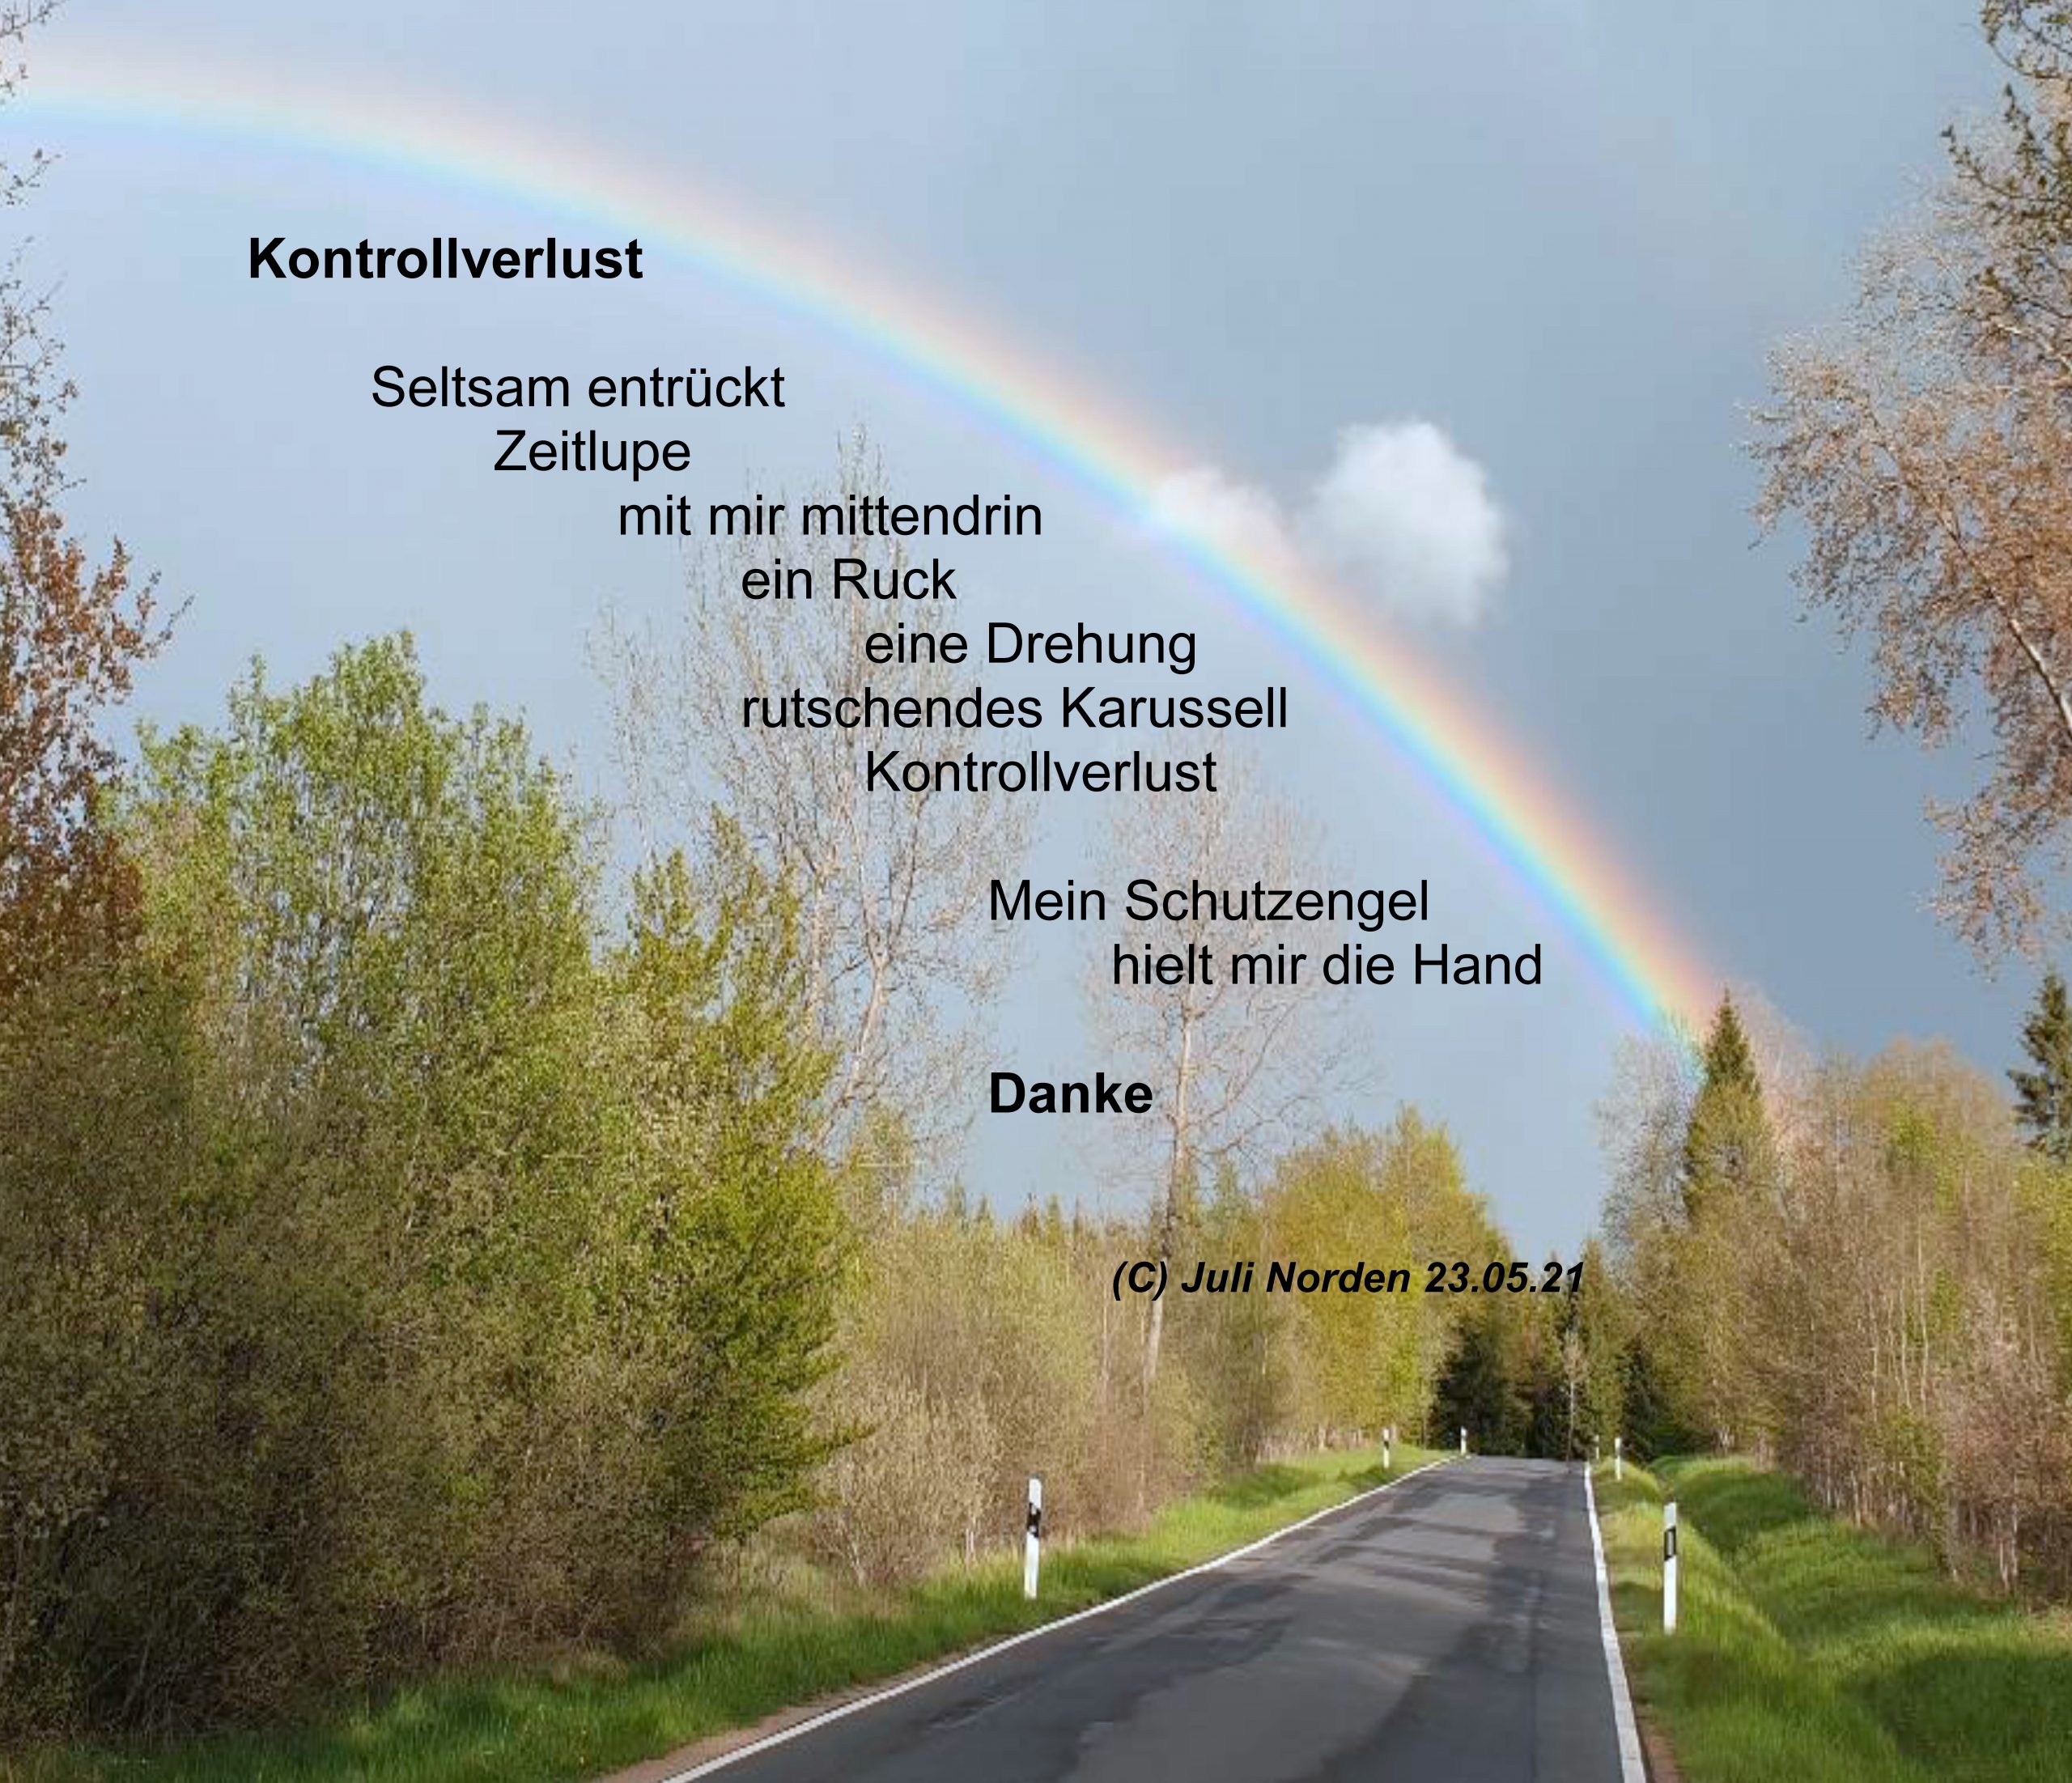 Ein Regenbogen über eine Straße, links und rechts davon Bäume. Darauf das Gedicht "Kontrollverlust" von Juli Norden